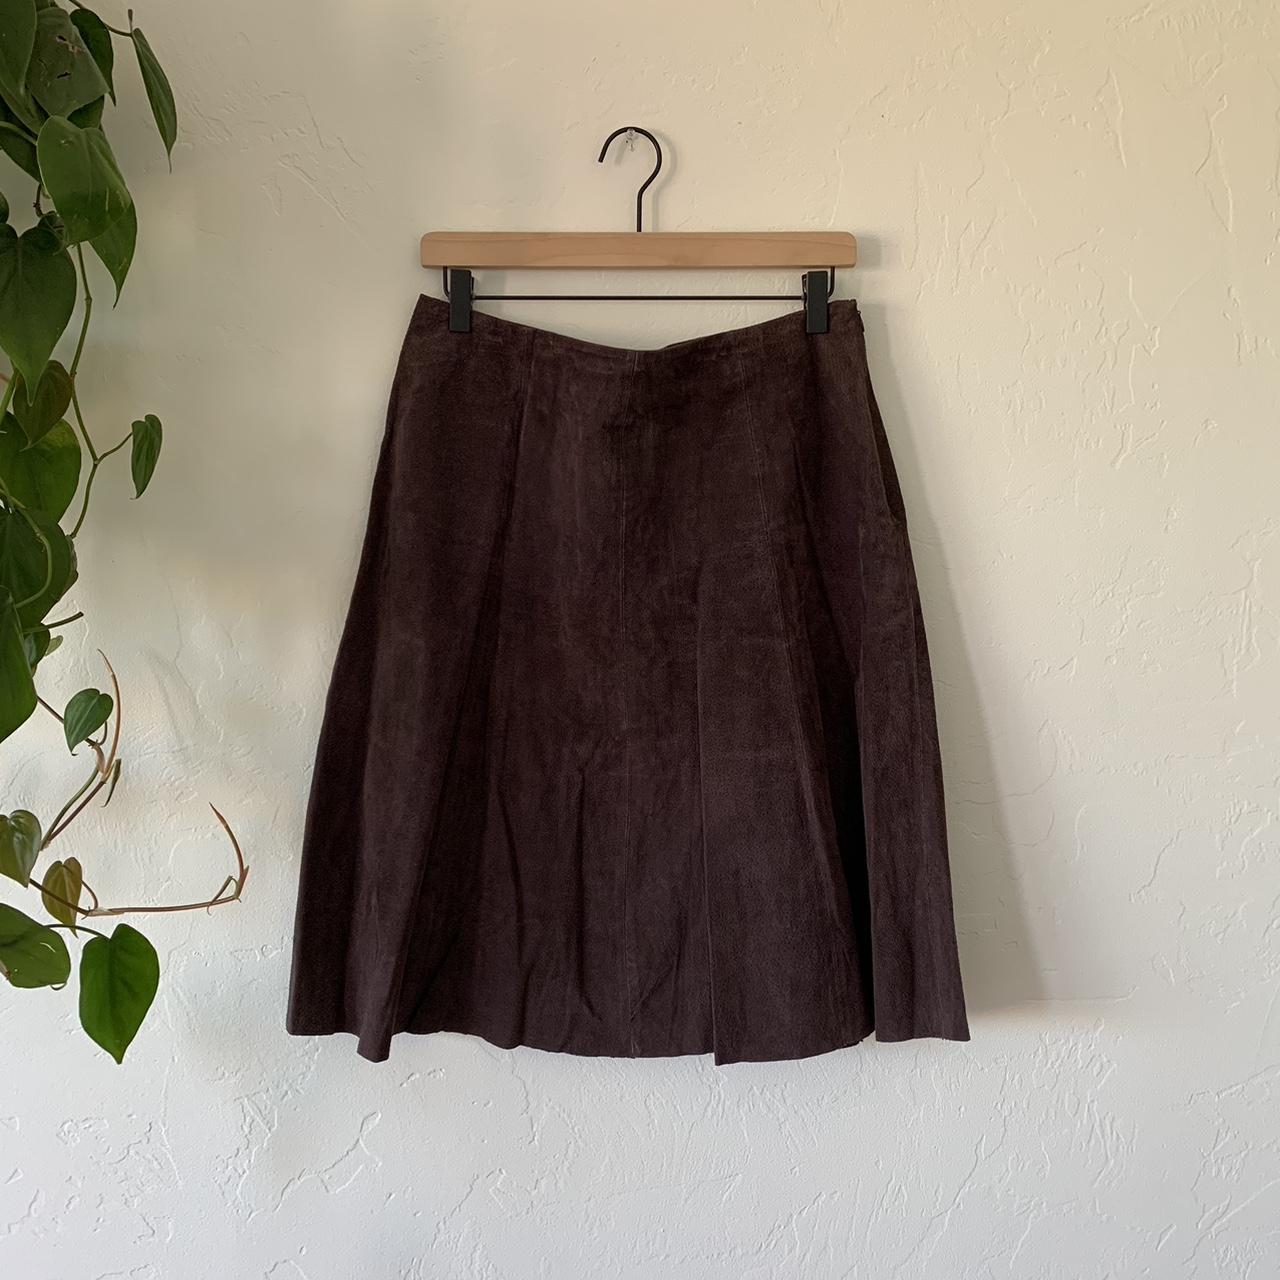 vintage 90s brown genuine suede skirt This... - Depop